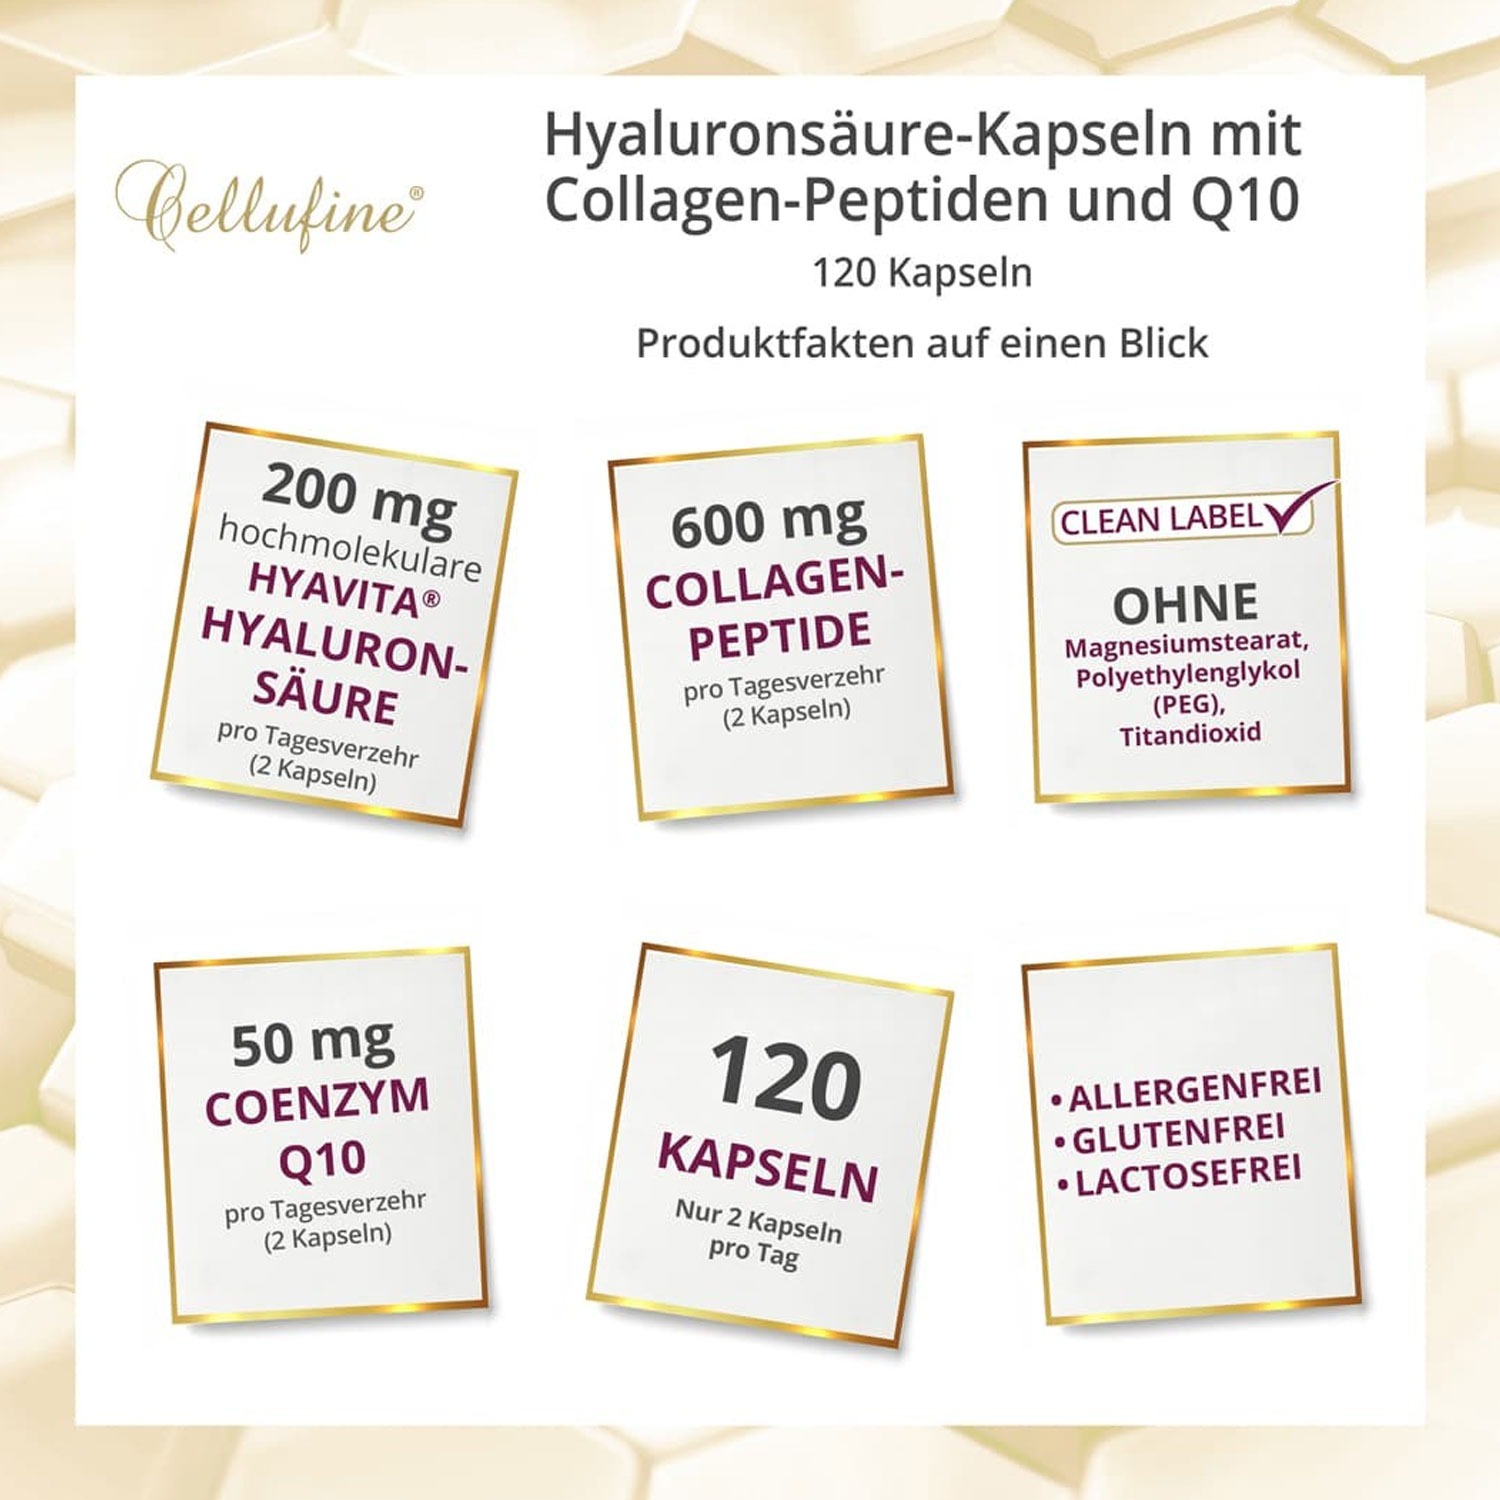 Cellufine® Hyaluronsäure-Kapseln mit Collagen-Peptiden und Q10 – Produktmerkmale